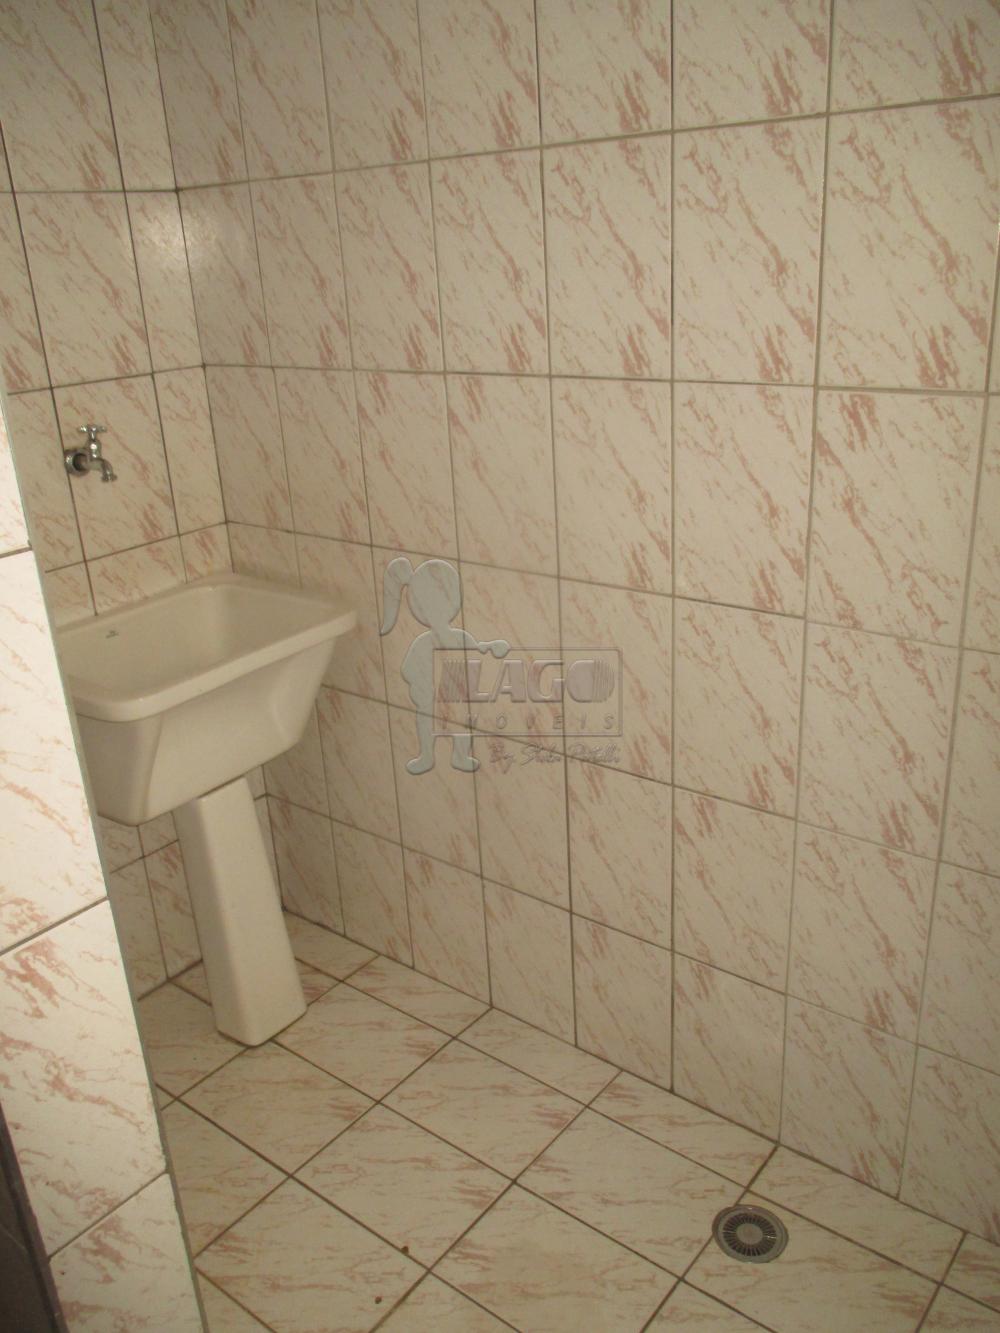 Alugar Apartamentos / Kitchenet / Flat em Ribeirão Preto R$ 750,00 - Foto 7